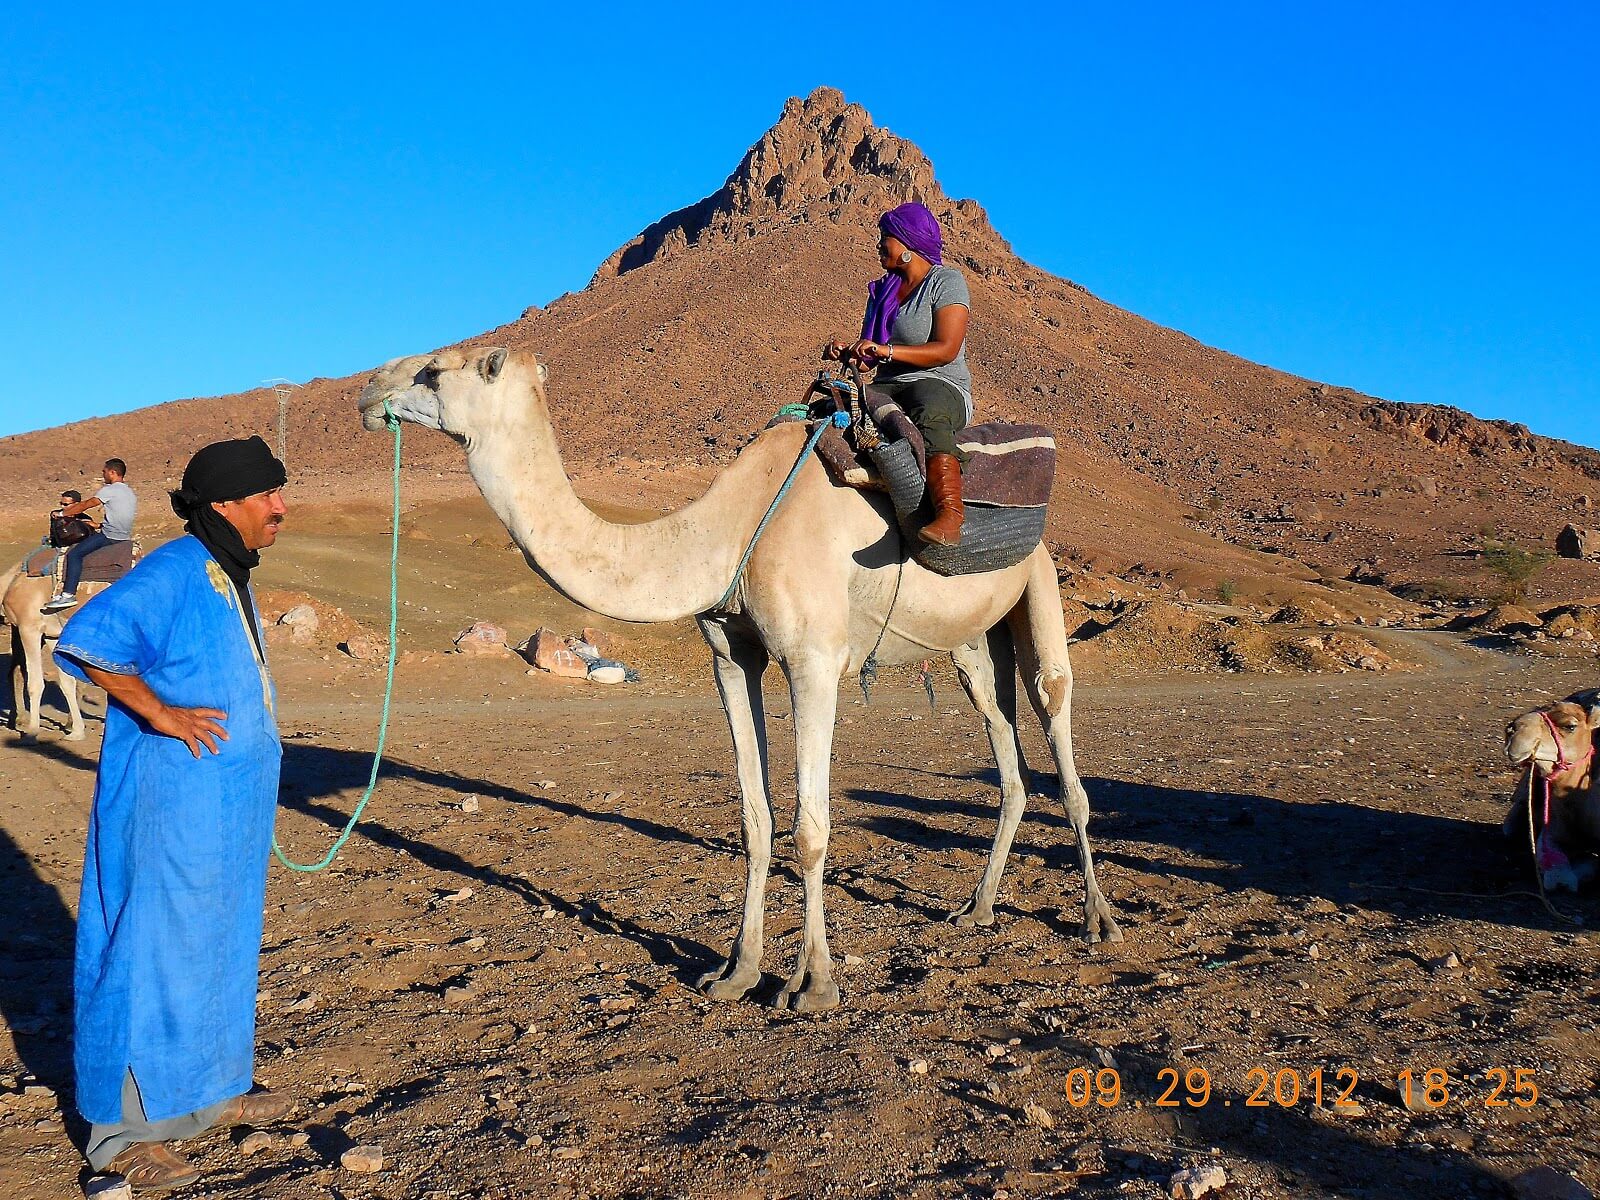 Marrakech Excurions, Tour al deserto Marocco in privato